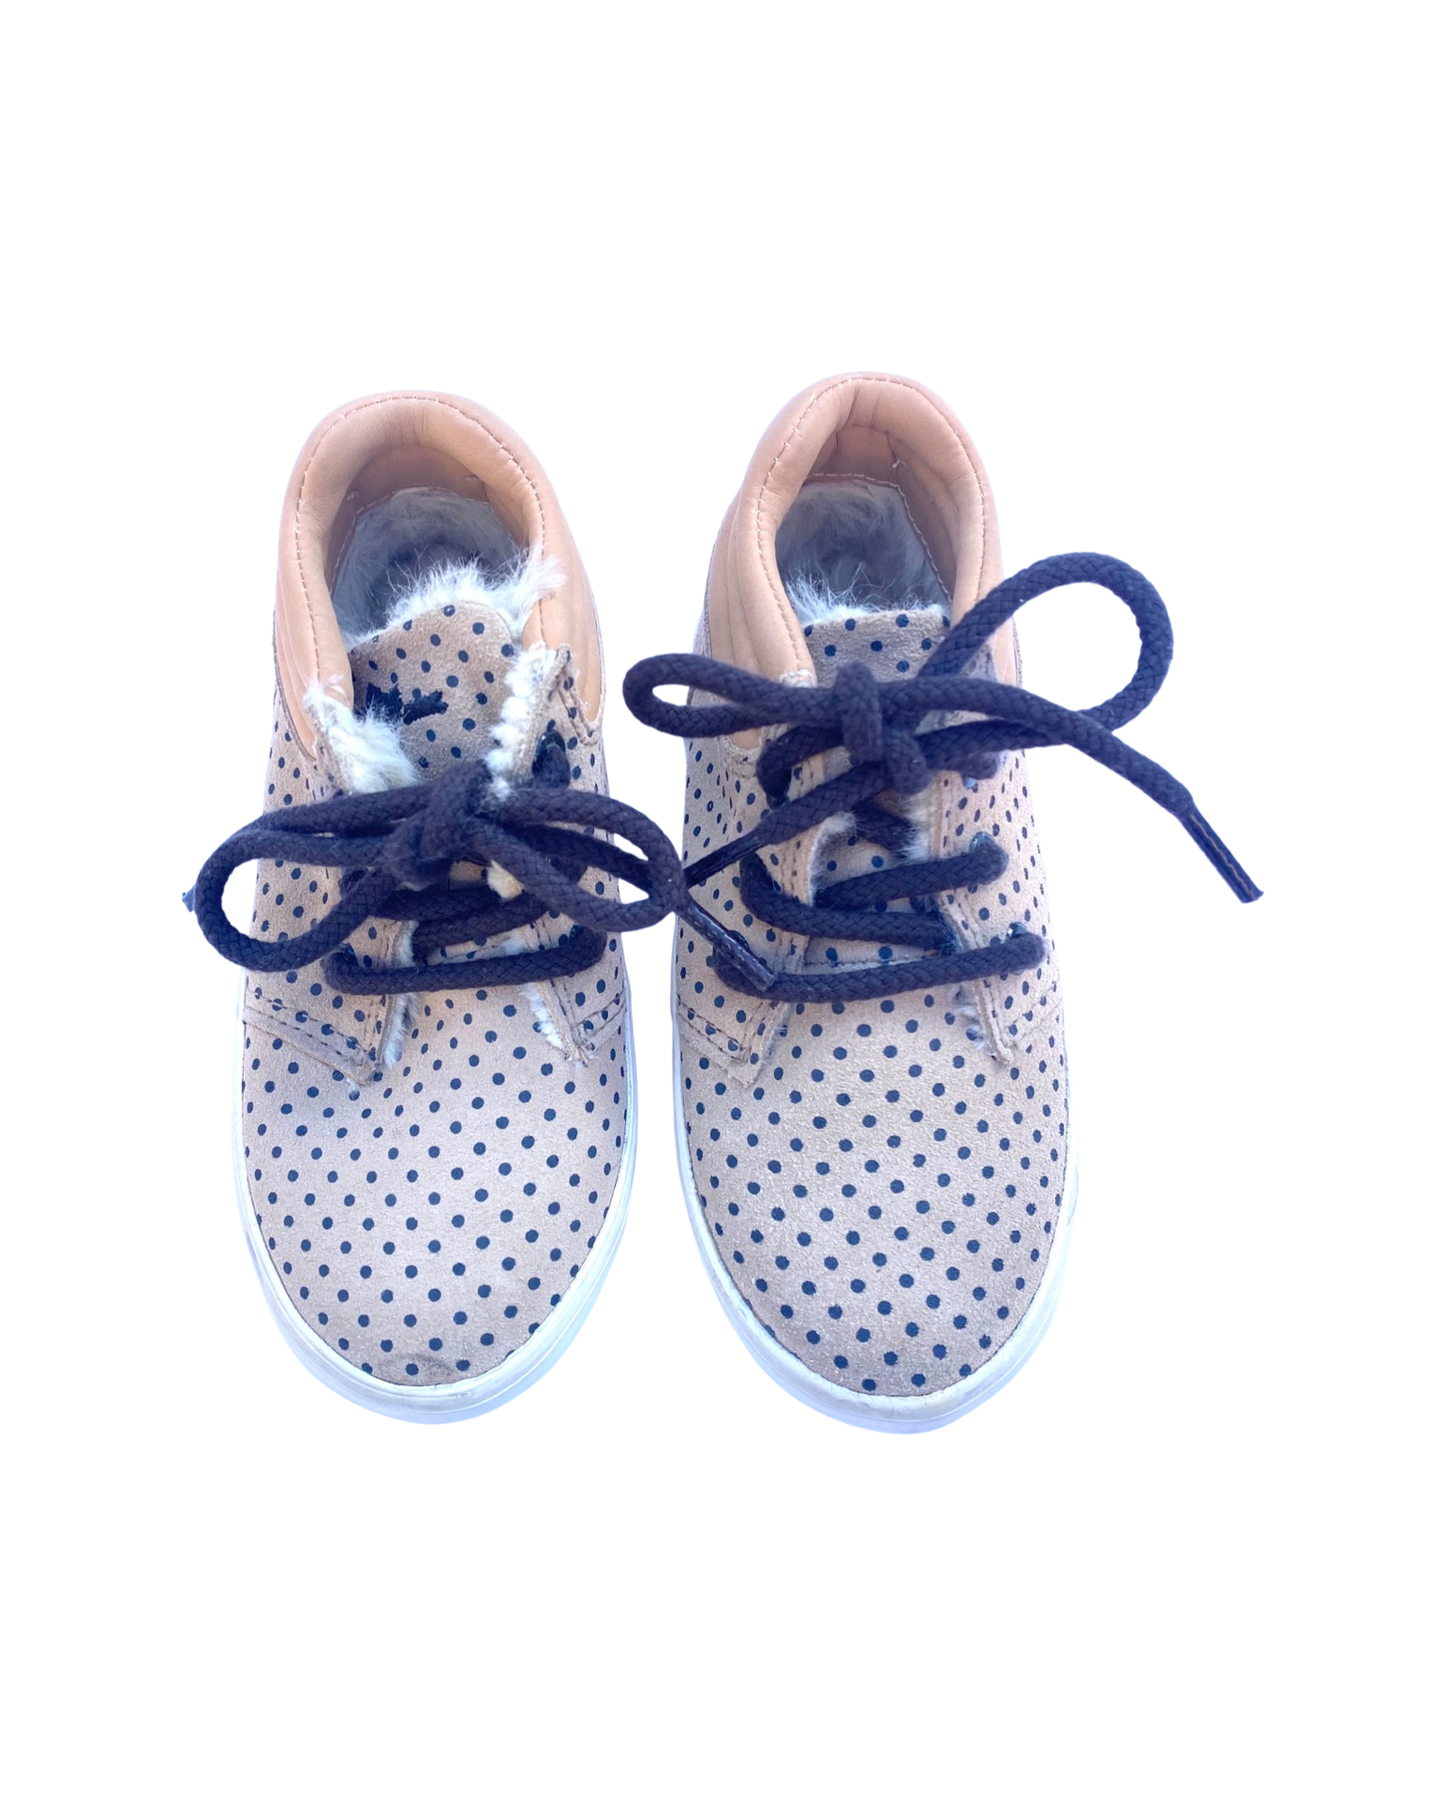 Zara kids lace up dotty boot (size UK6.5/EU23)